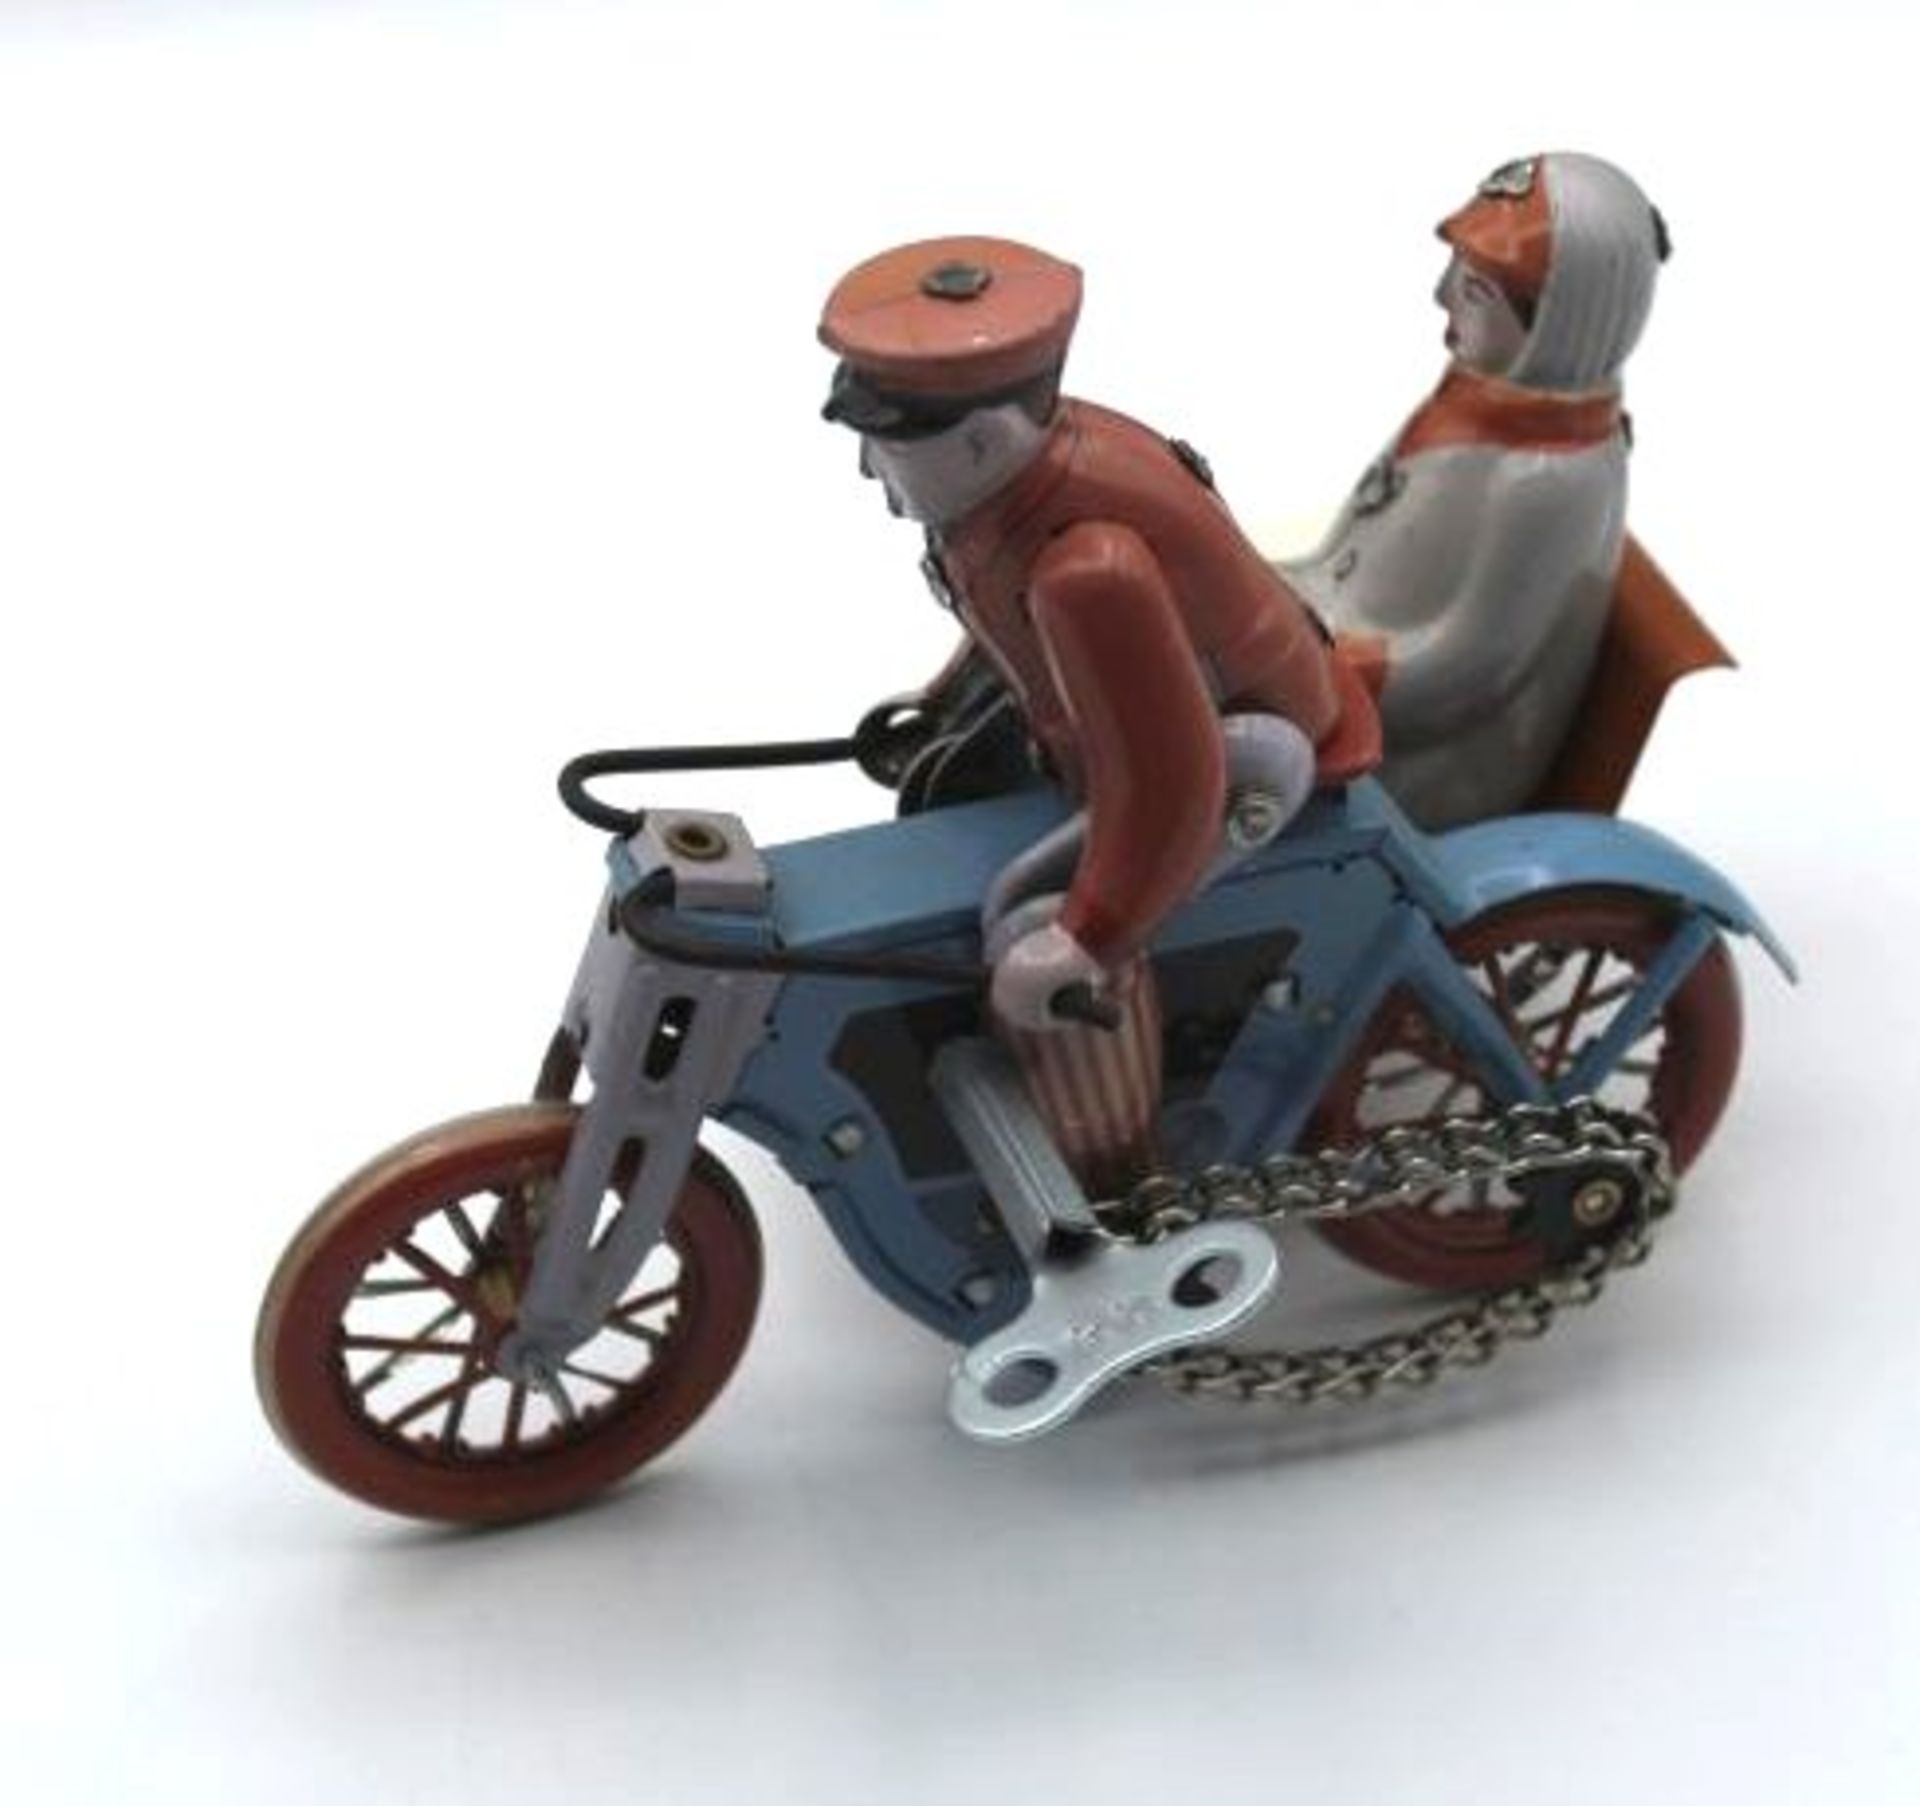 Blech-Motorrad mit Beiwagen, China, MS 458, H-11cm.- - -22.61 % buyer's premium on the hammer - Bild 2 aus 3